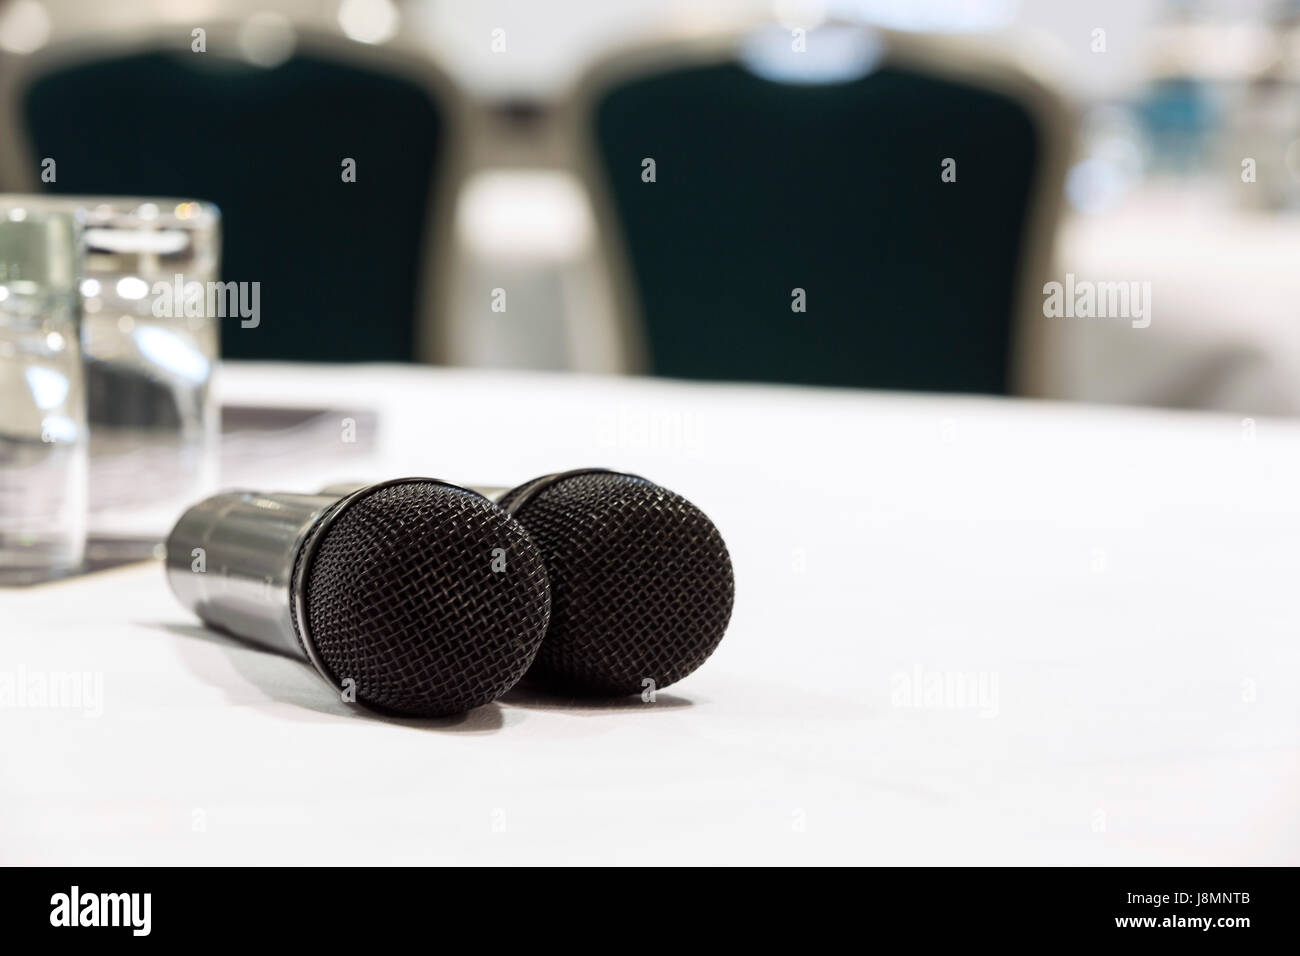 Dos micrófonos en un cuadro blanco utilizado para Q&A en una conferencia o sala de reuniones. Sillas y una pantalla en el fondo Foto de stock